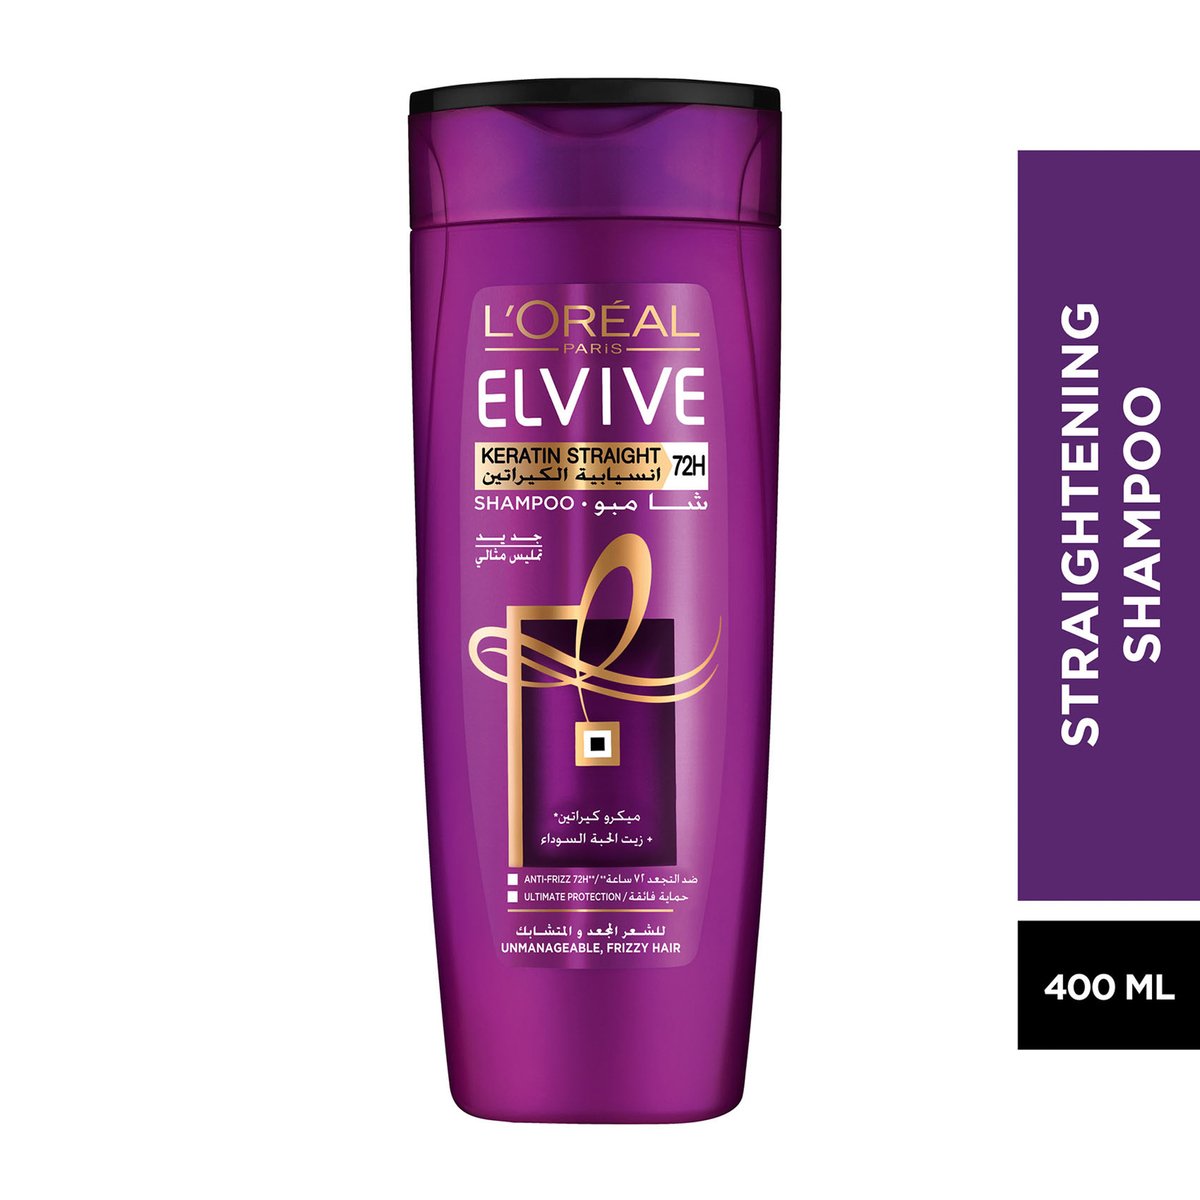 L'Oreal Elvive Keratin Straight Shampoo 400 ml